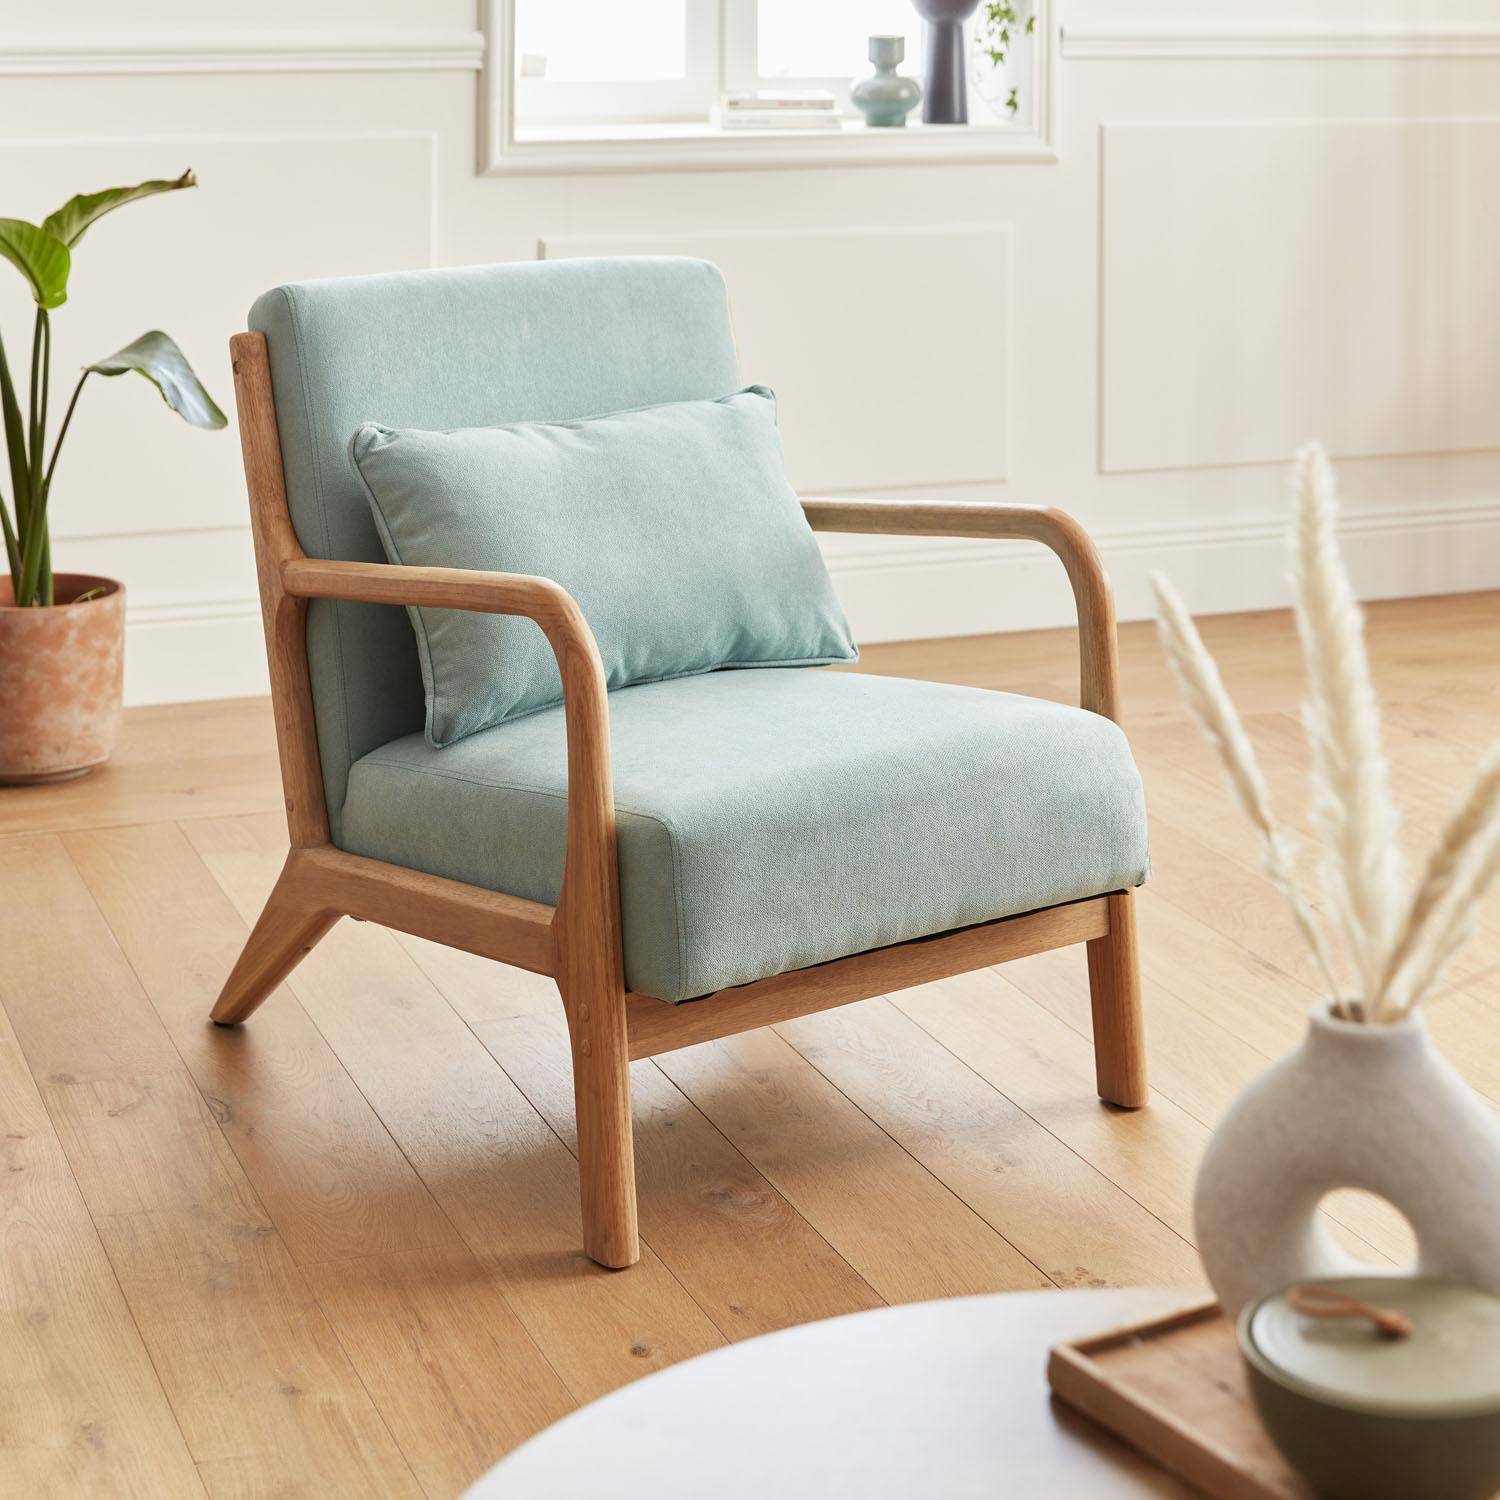 Poltrona de design em madeira e tecido, 1 assento reto fixo, pernas de bússola escandinavas, verde água Photo1